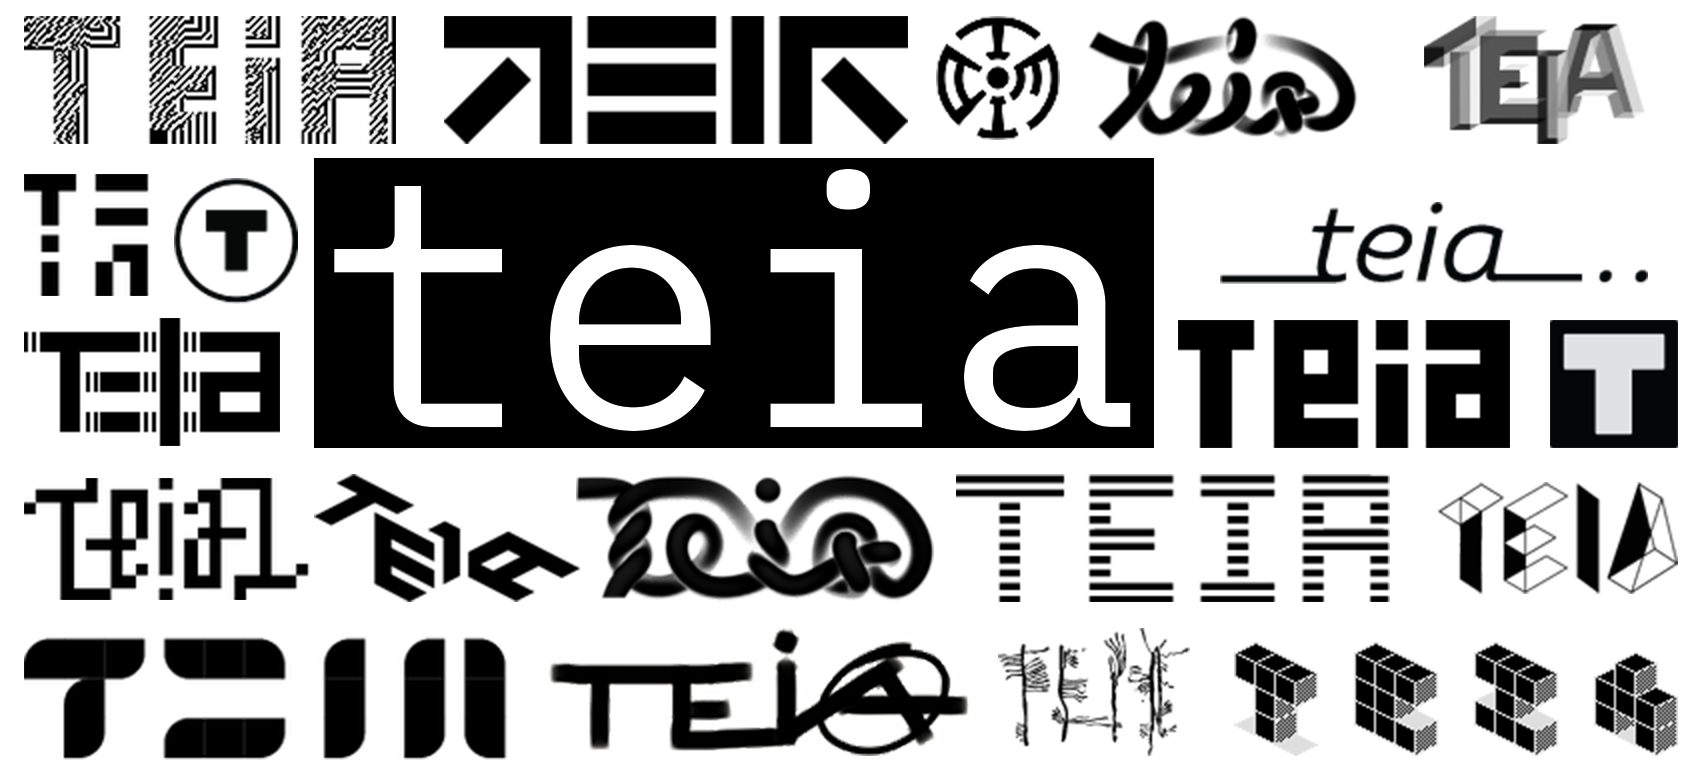 teia marketplace logo on tezos